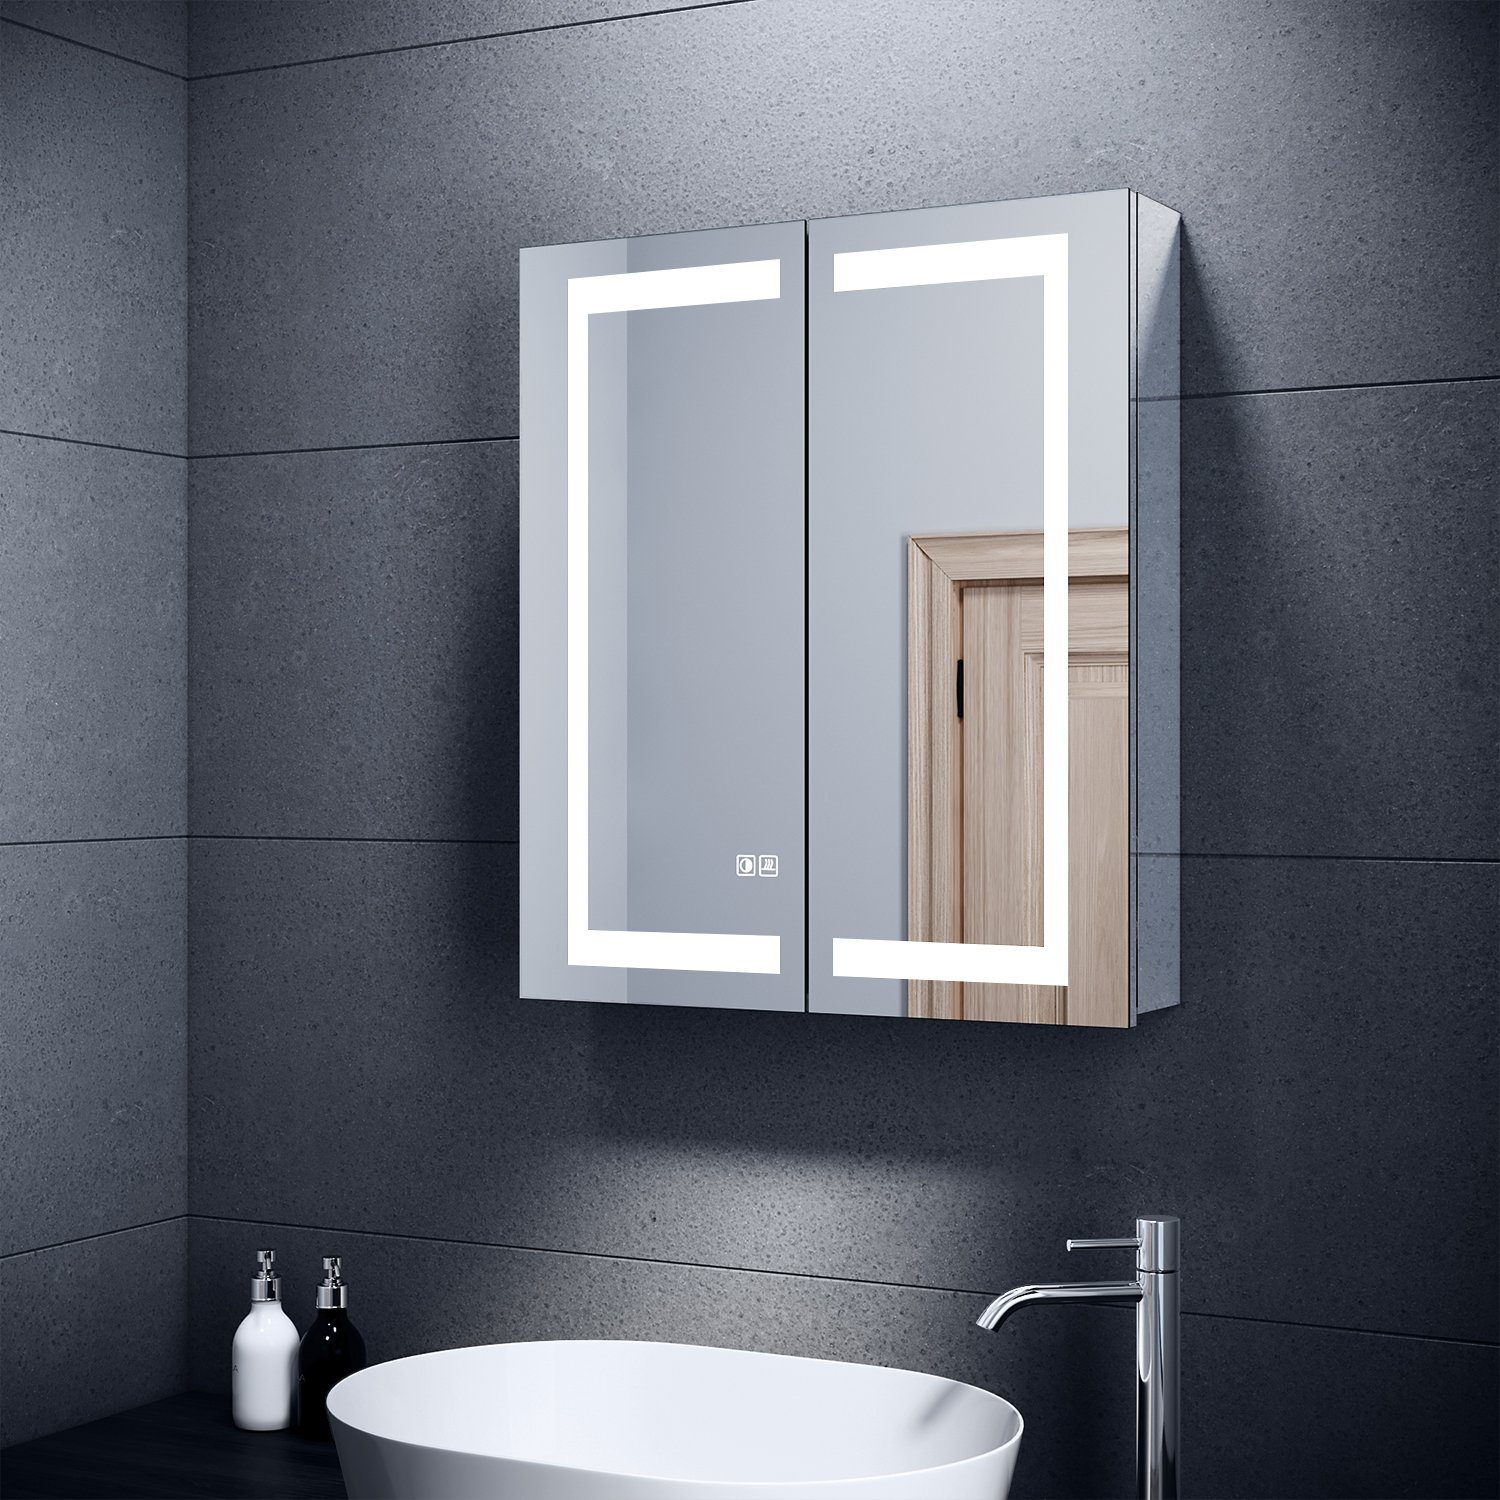 SONNI Badezimmerspiegelschrank Edelstahl Badezimmerspiegelschrank mit  LED-Beleuchtung 60x70x13 cm mit Beschlagfrei, Rasiersteckdose, Touch- Schalter, verstellbare Glasböden, IP44, Spiegelschrank